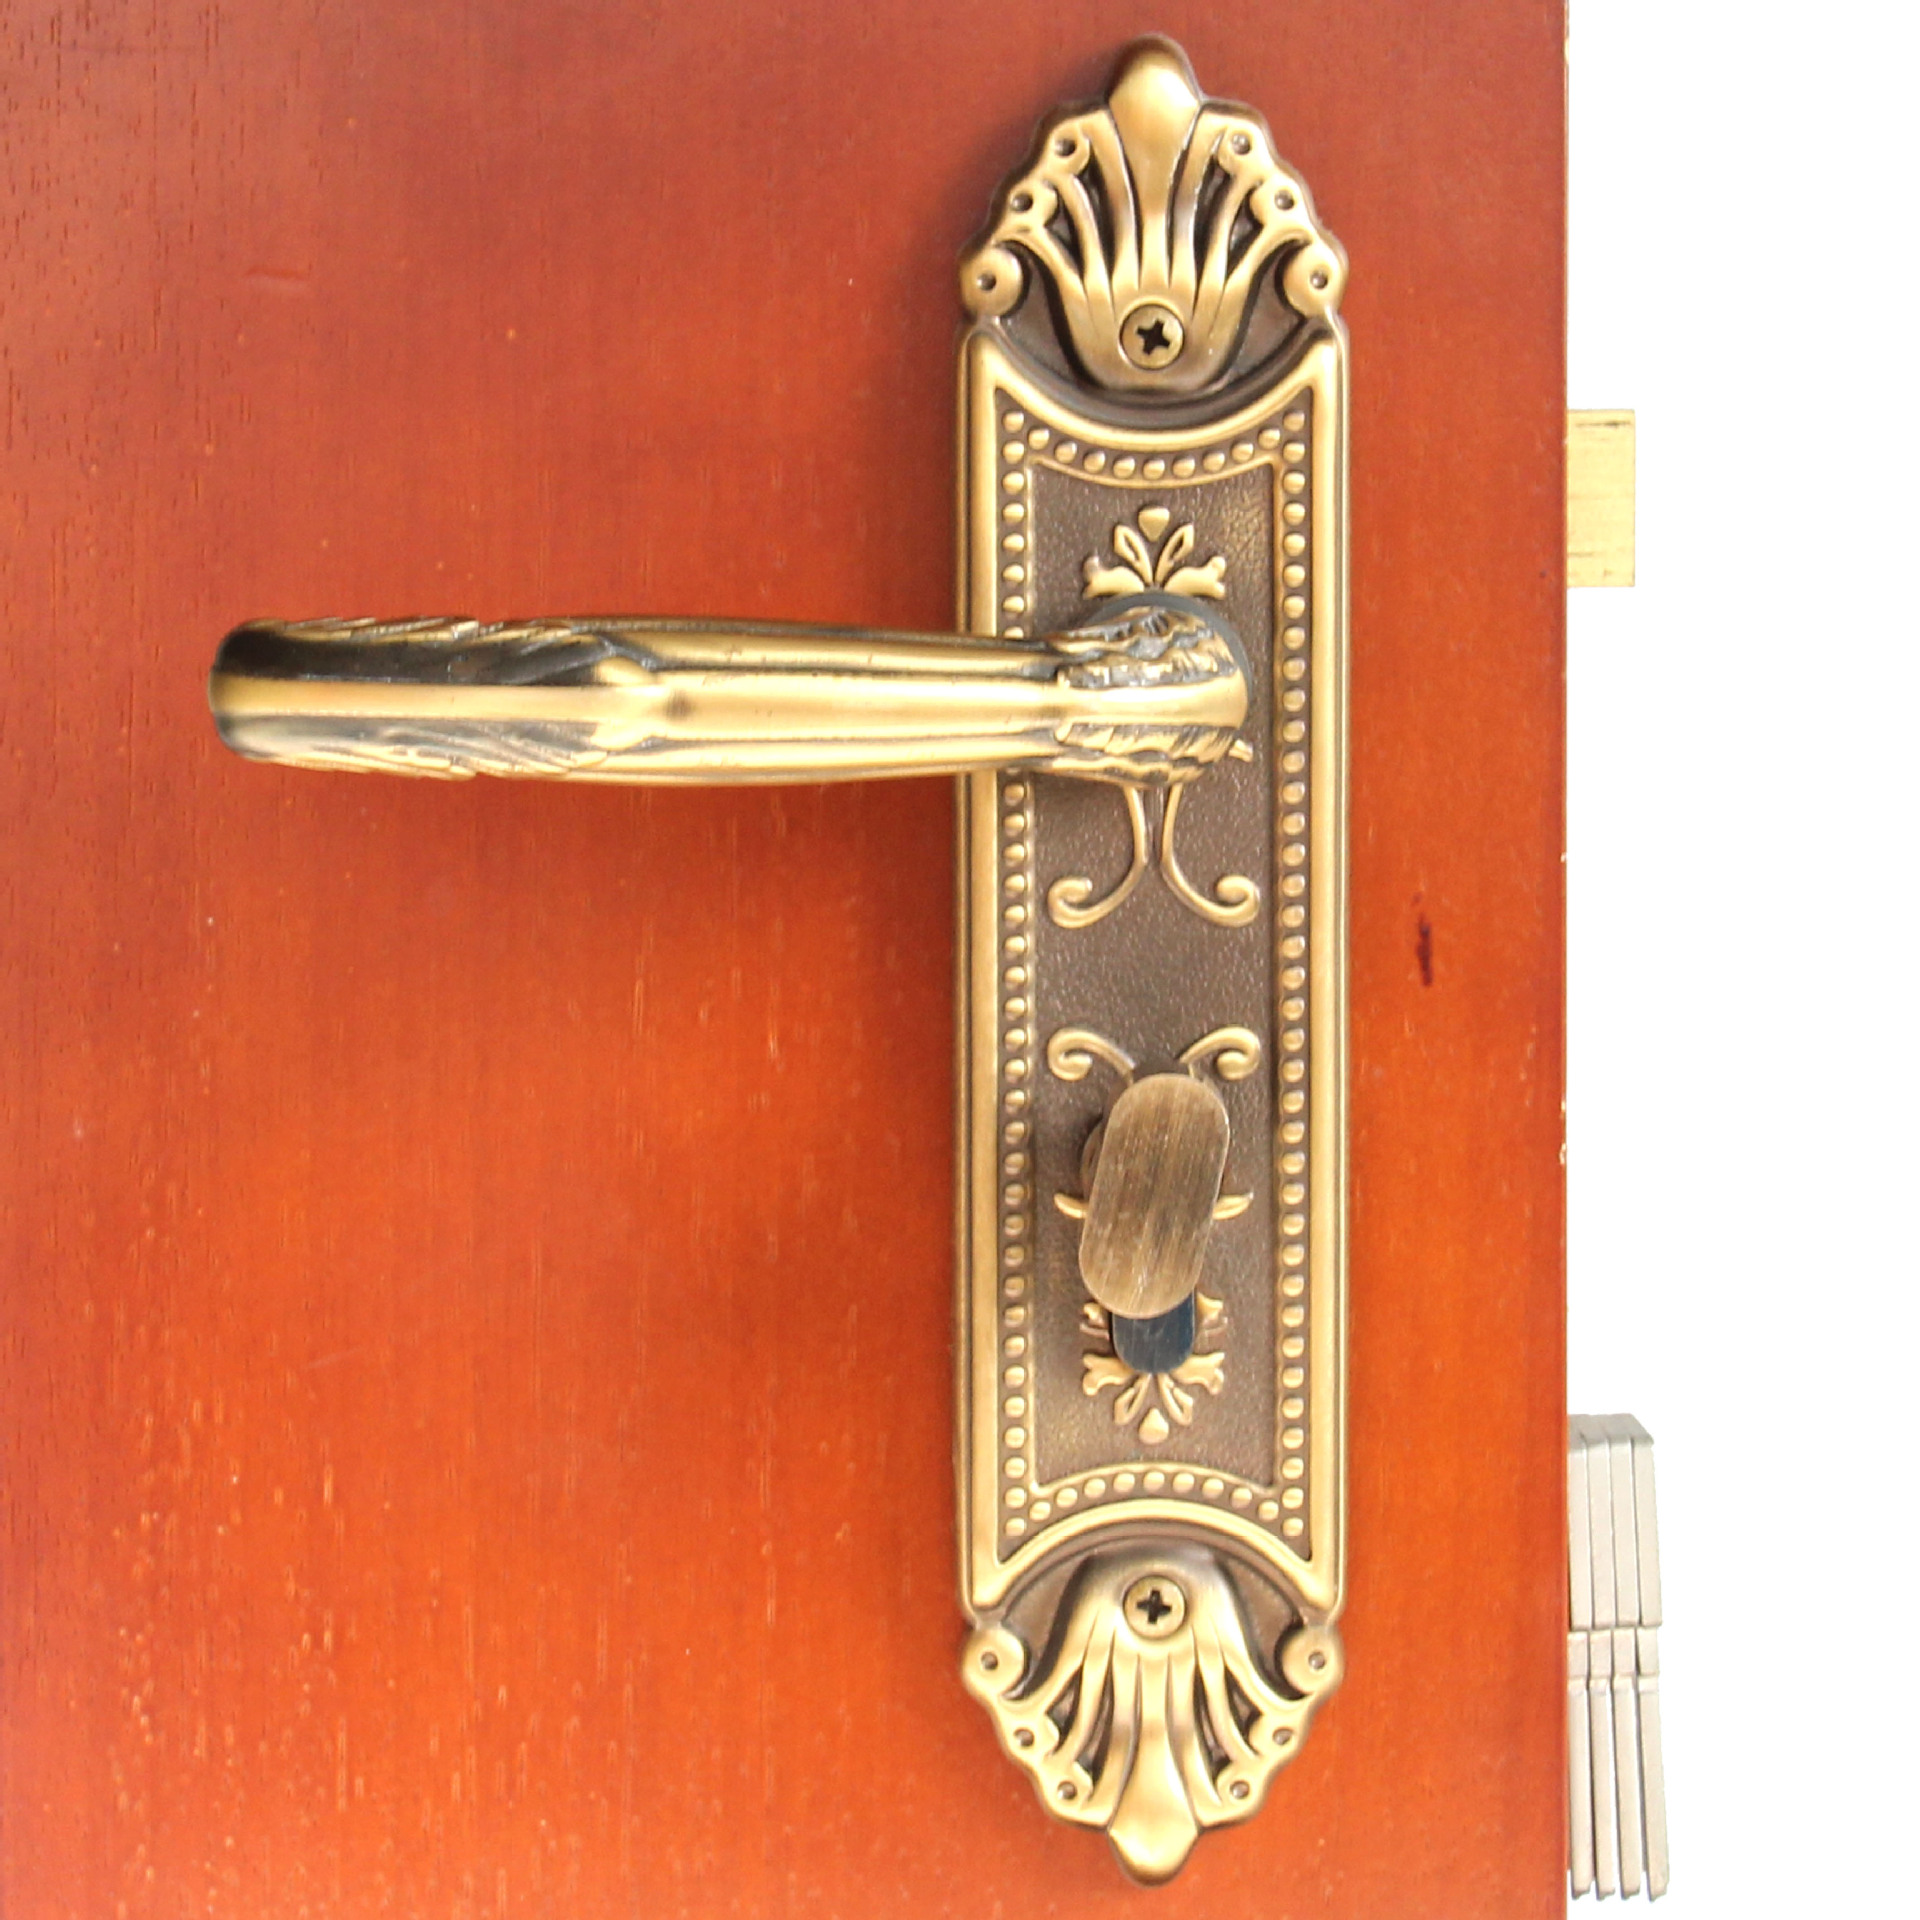 Brass Door Handle Modern Design Handles for Wooden Doors